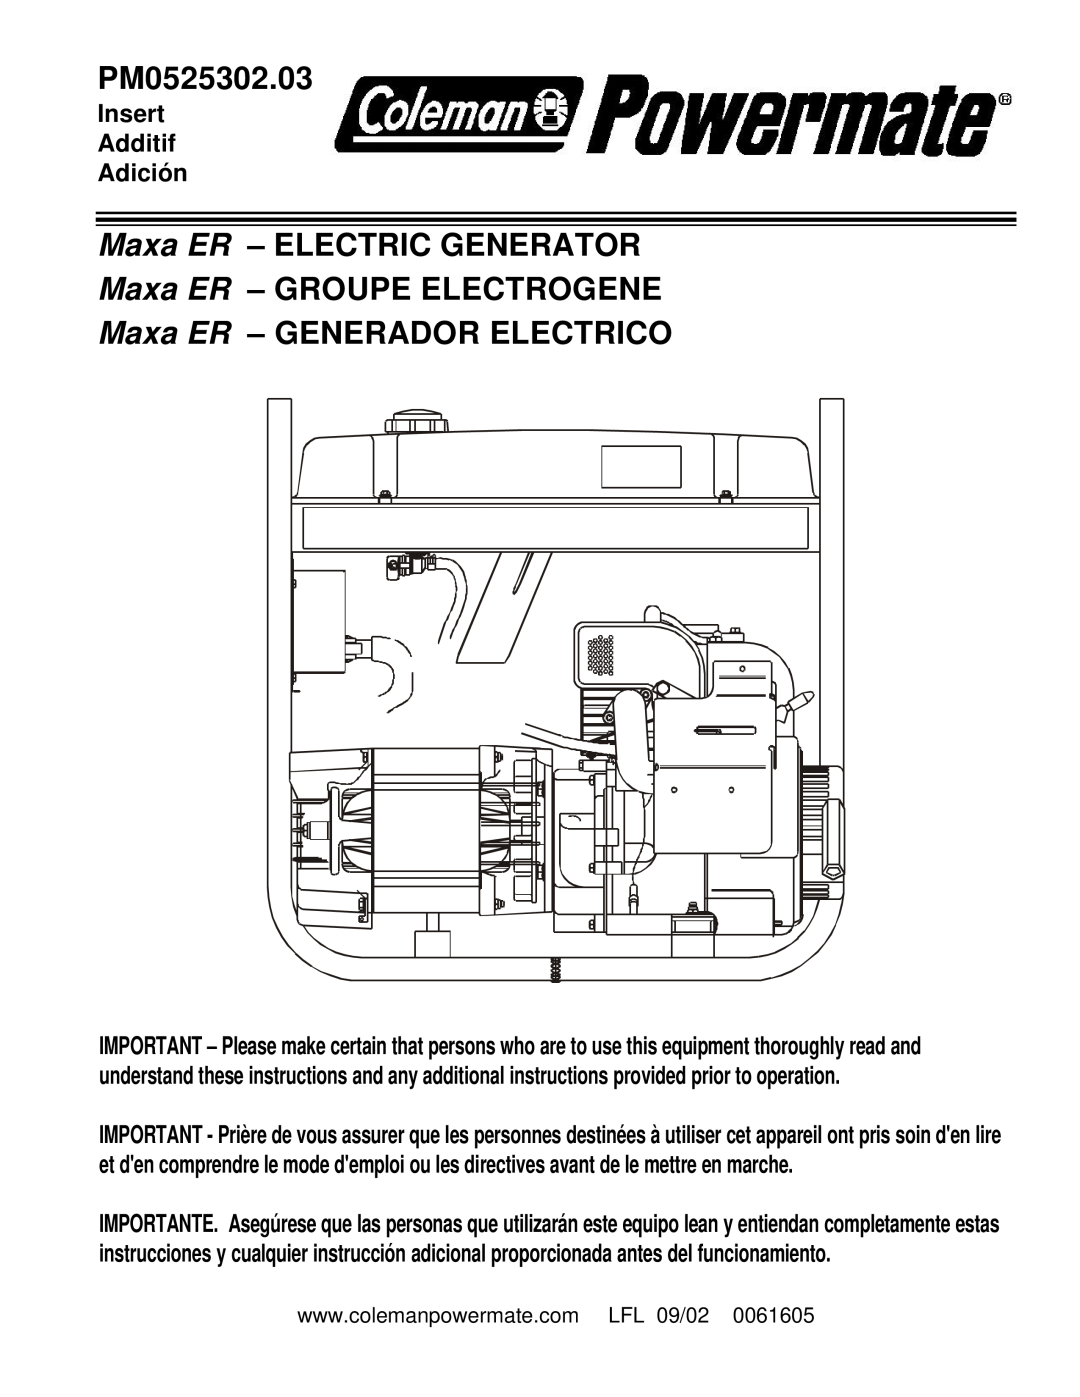 Powermate PM0525302.03 manual Maxa ER – ELECTRIC GENERATOR, Maxa ER – GROUPE ELECTROGENE, Maxa ER – GENERADOR ELECTRICO 